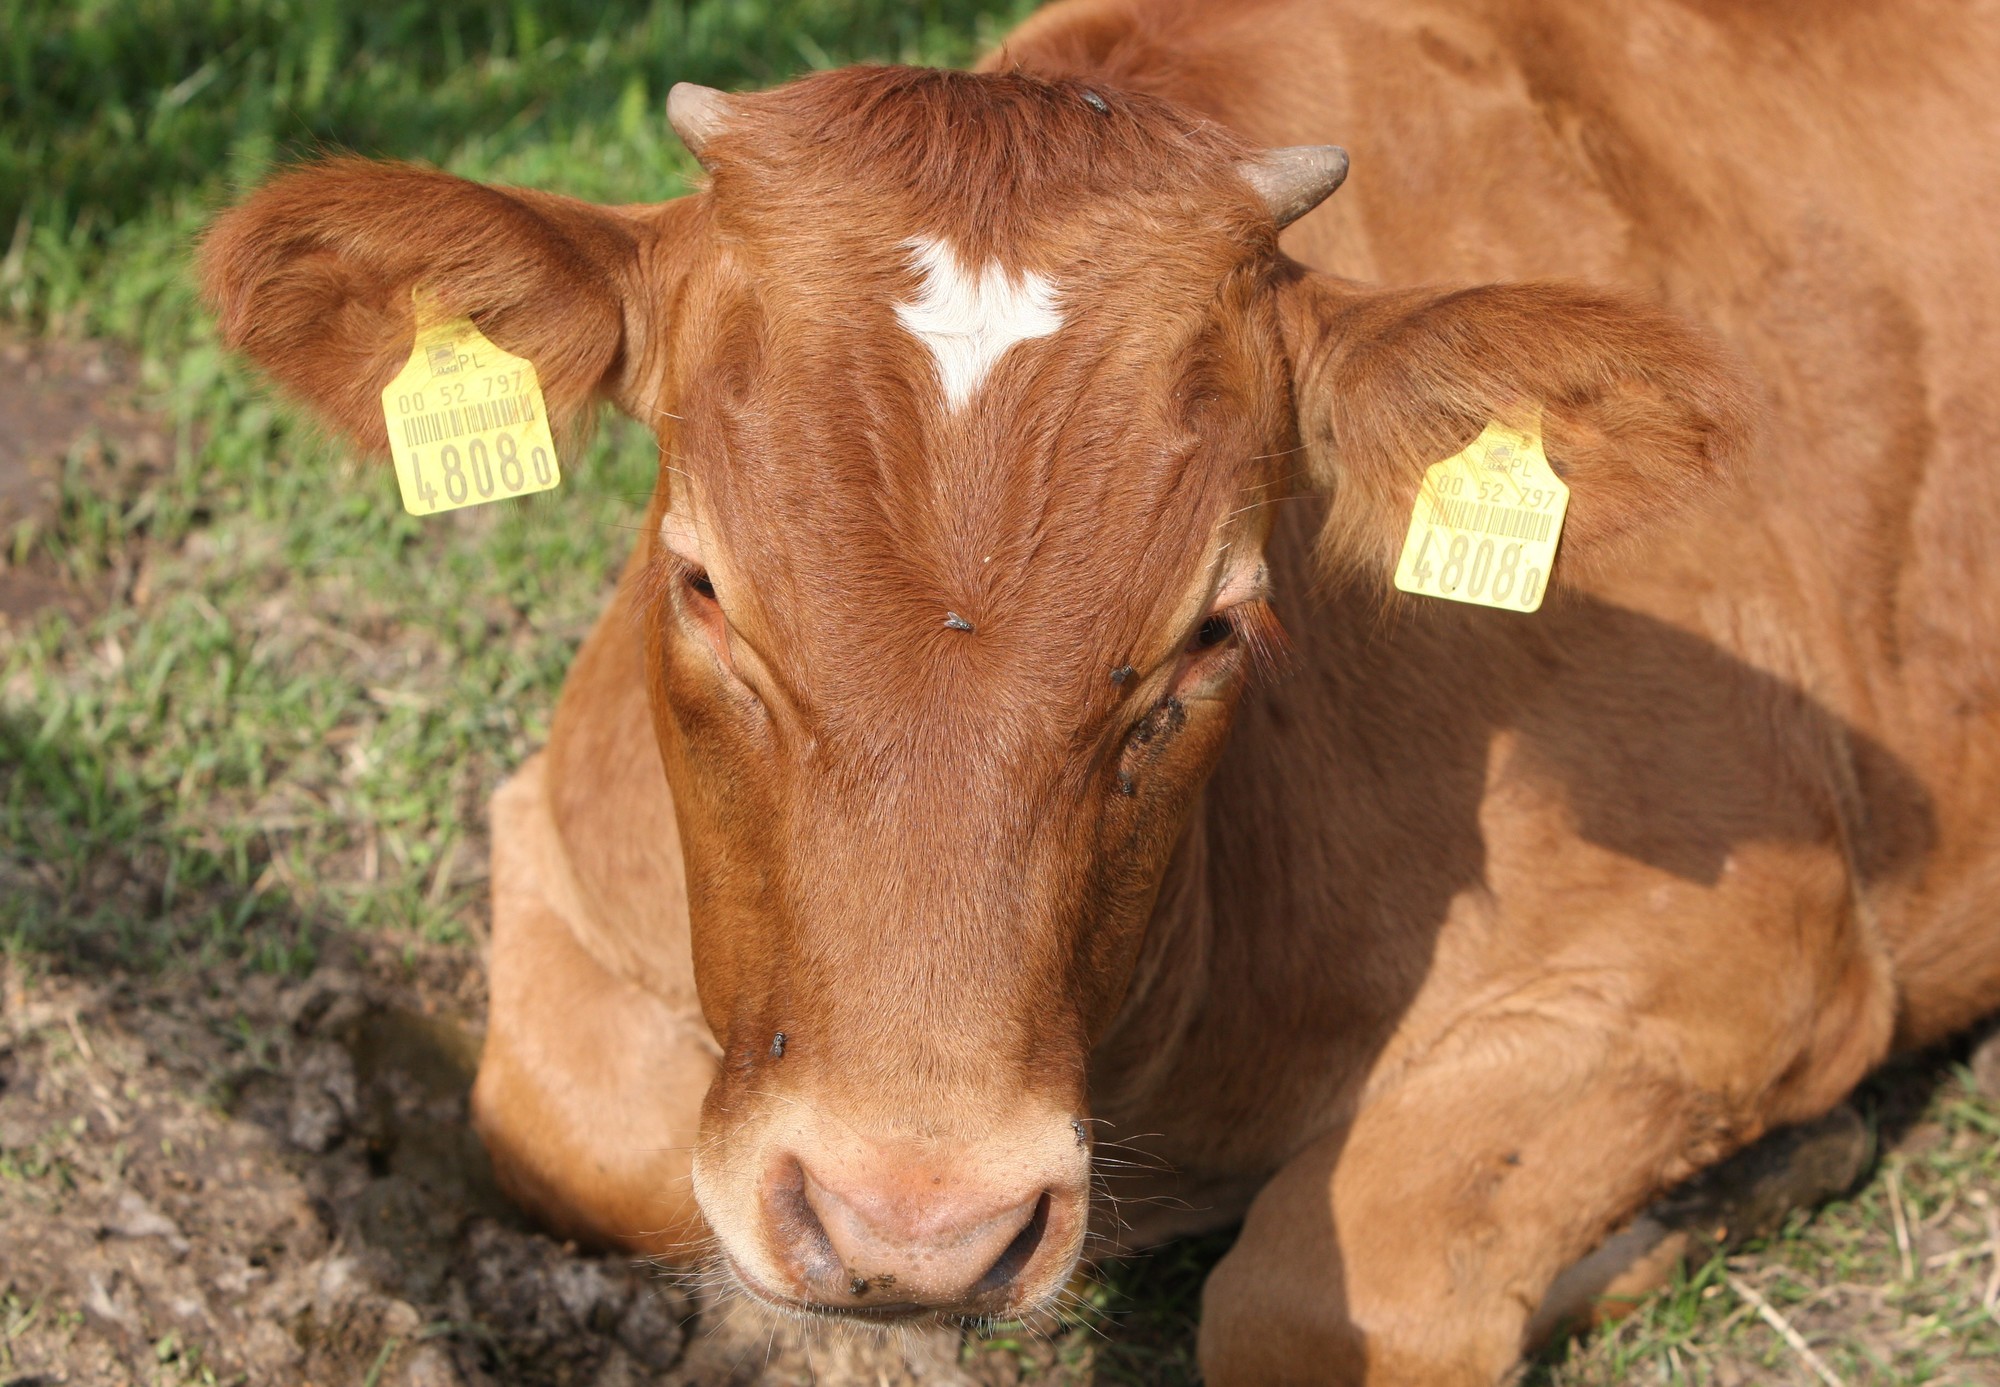 Ubojna handlująca mięsem chorych krów bez zgody na działalność